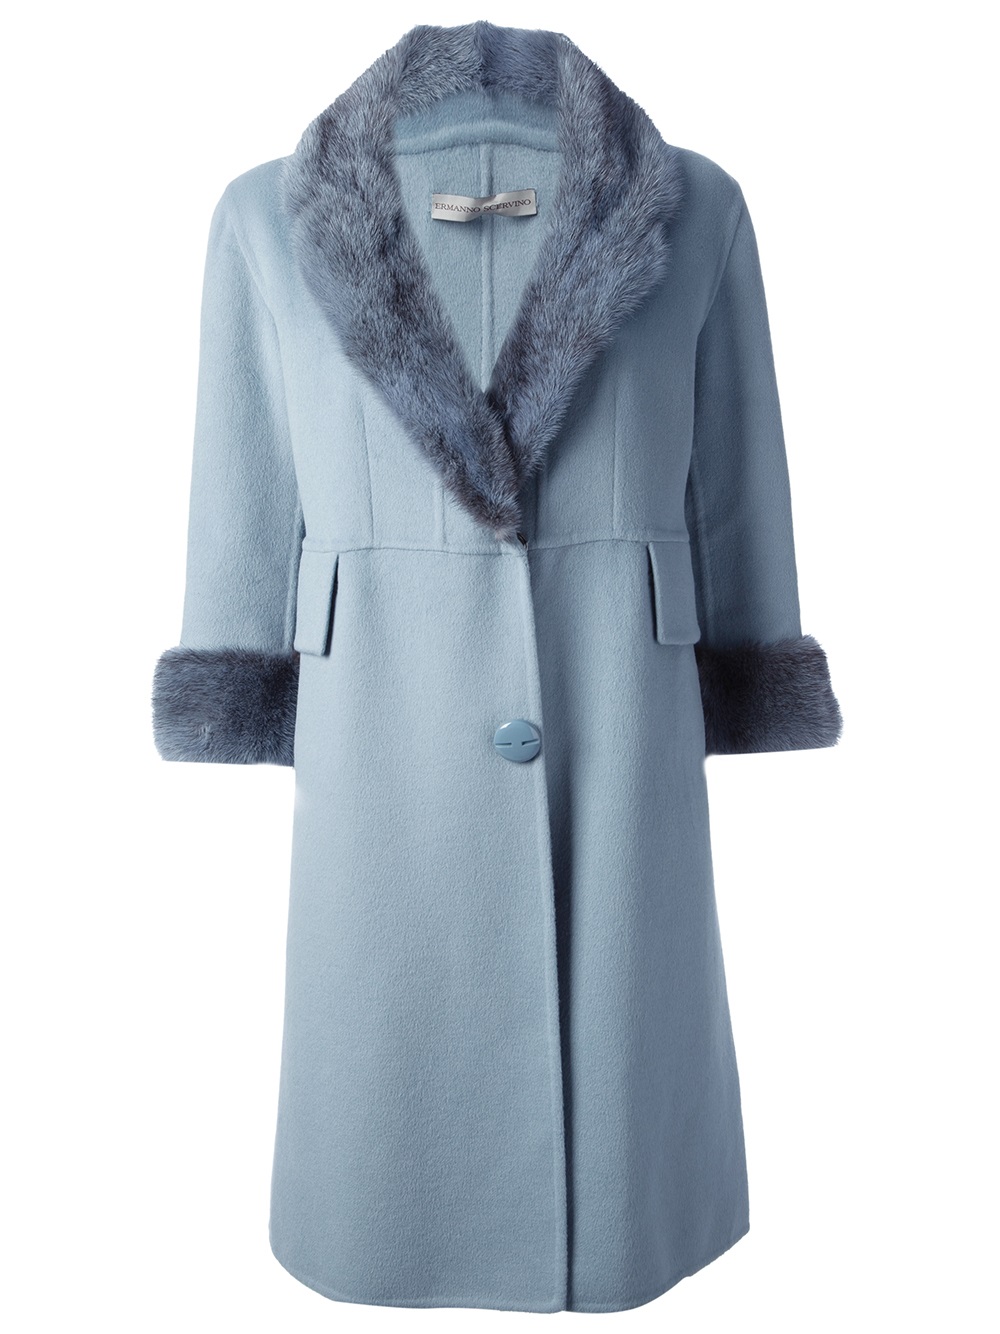 Lyst - Ermanno Scervino Fur Trimmed Coat in Blue